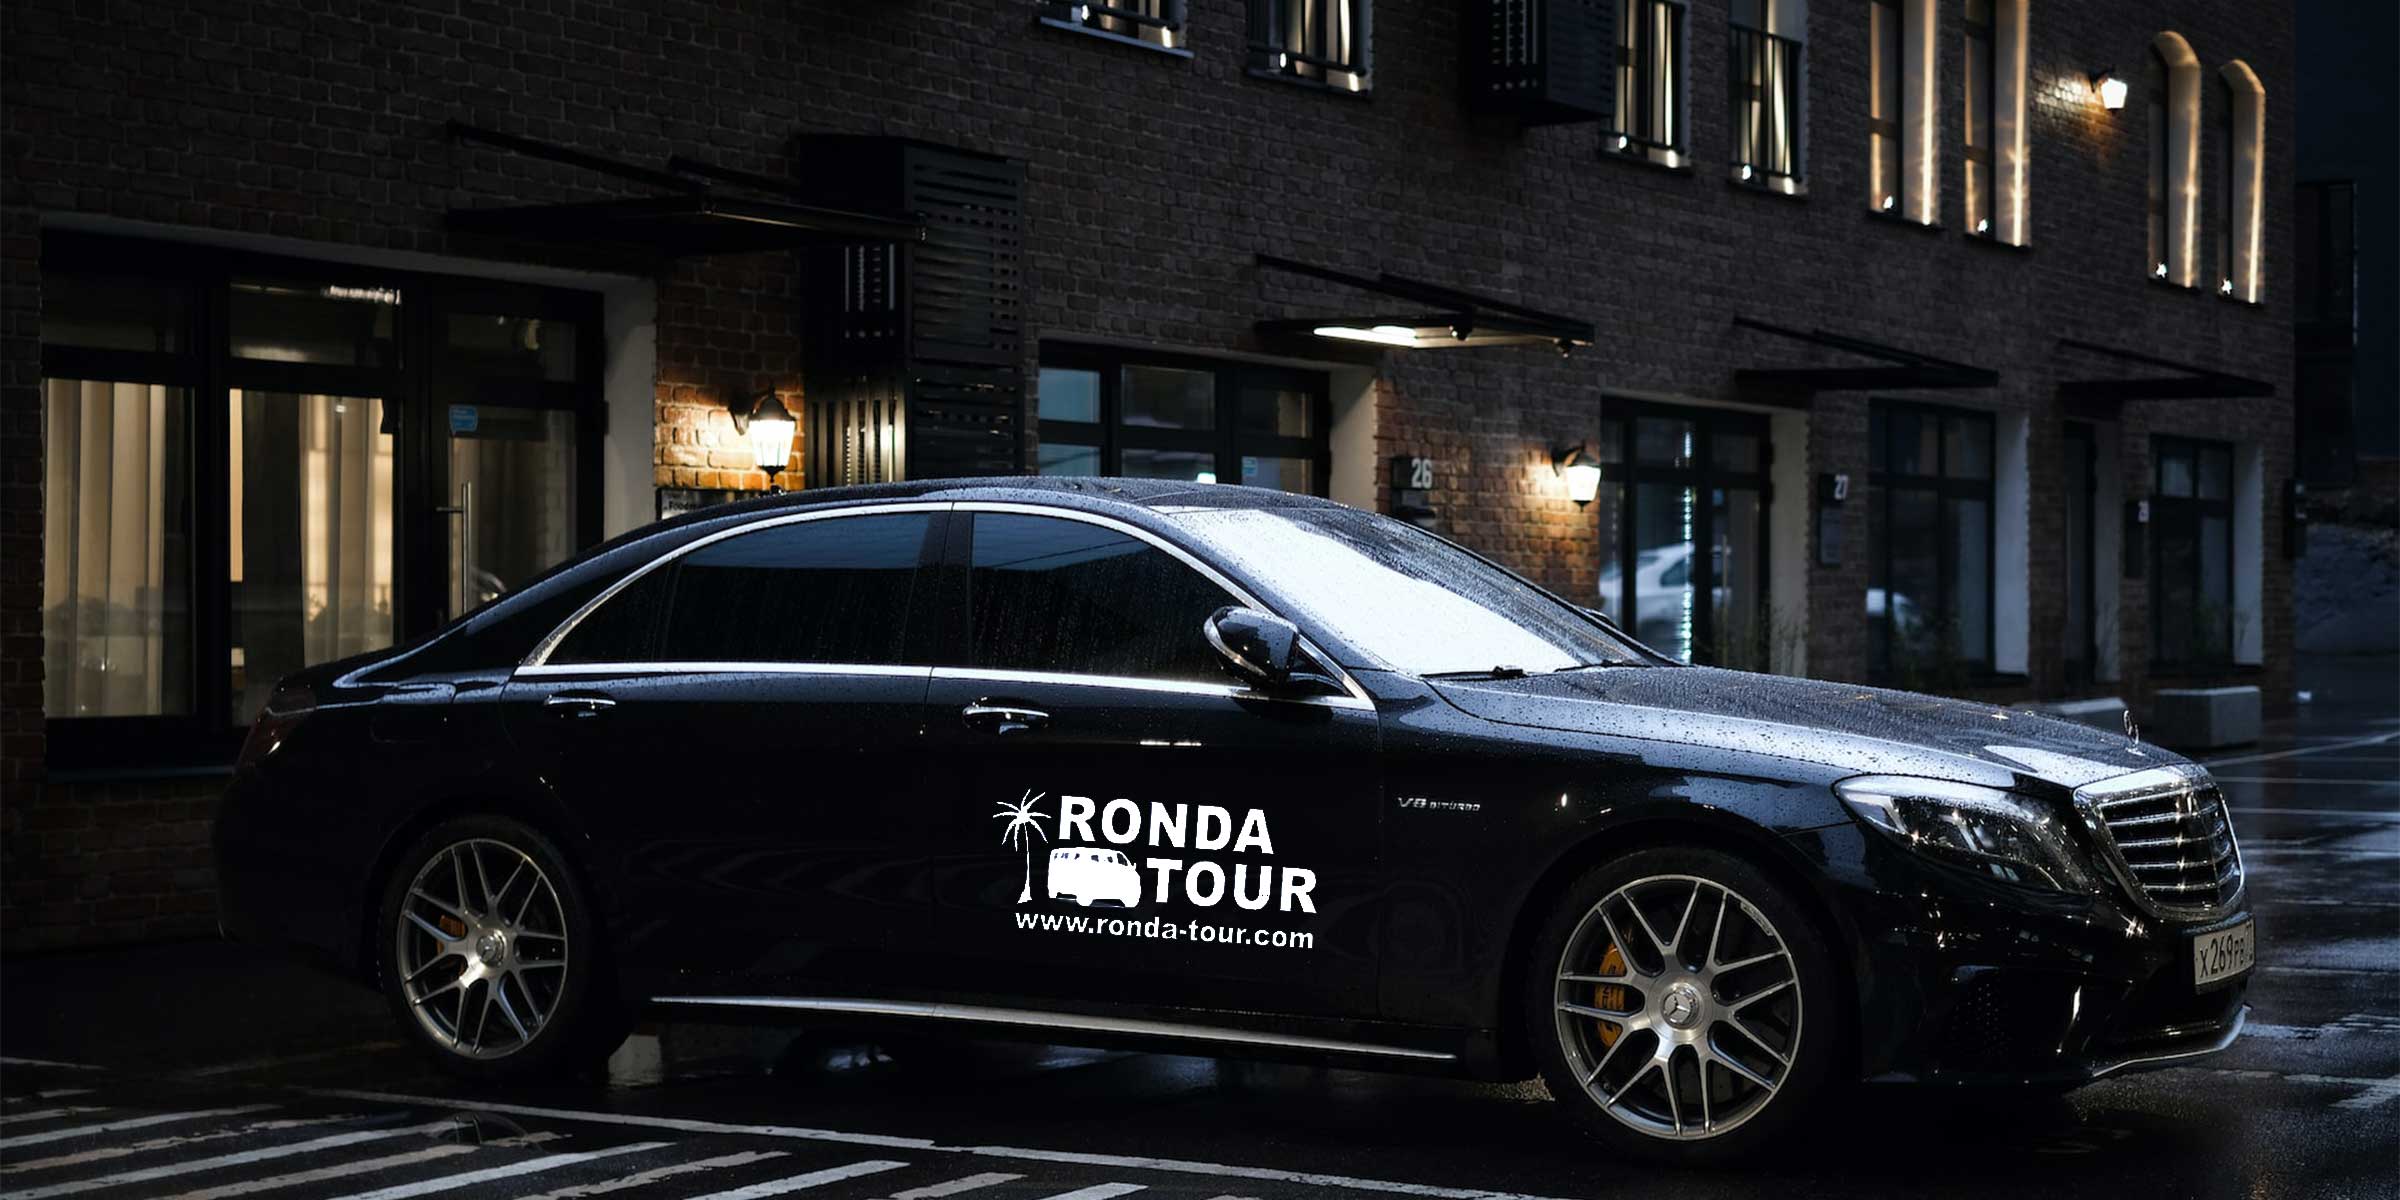 Photo d'une Mercedes S-Class garée devant un immeuble, de nuit, avec le logo de Ronda Tour et son adresse web www.ronda-tour.com